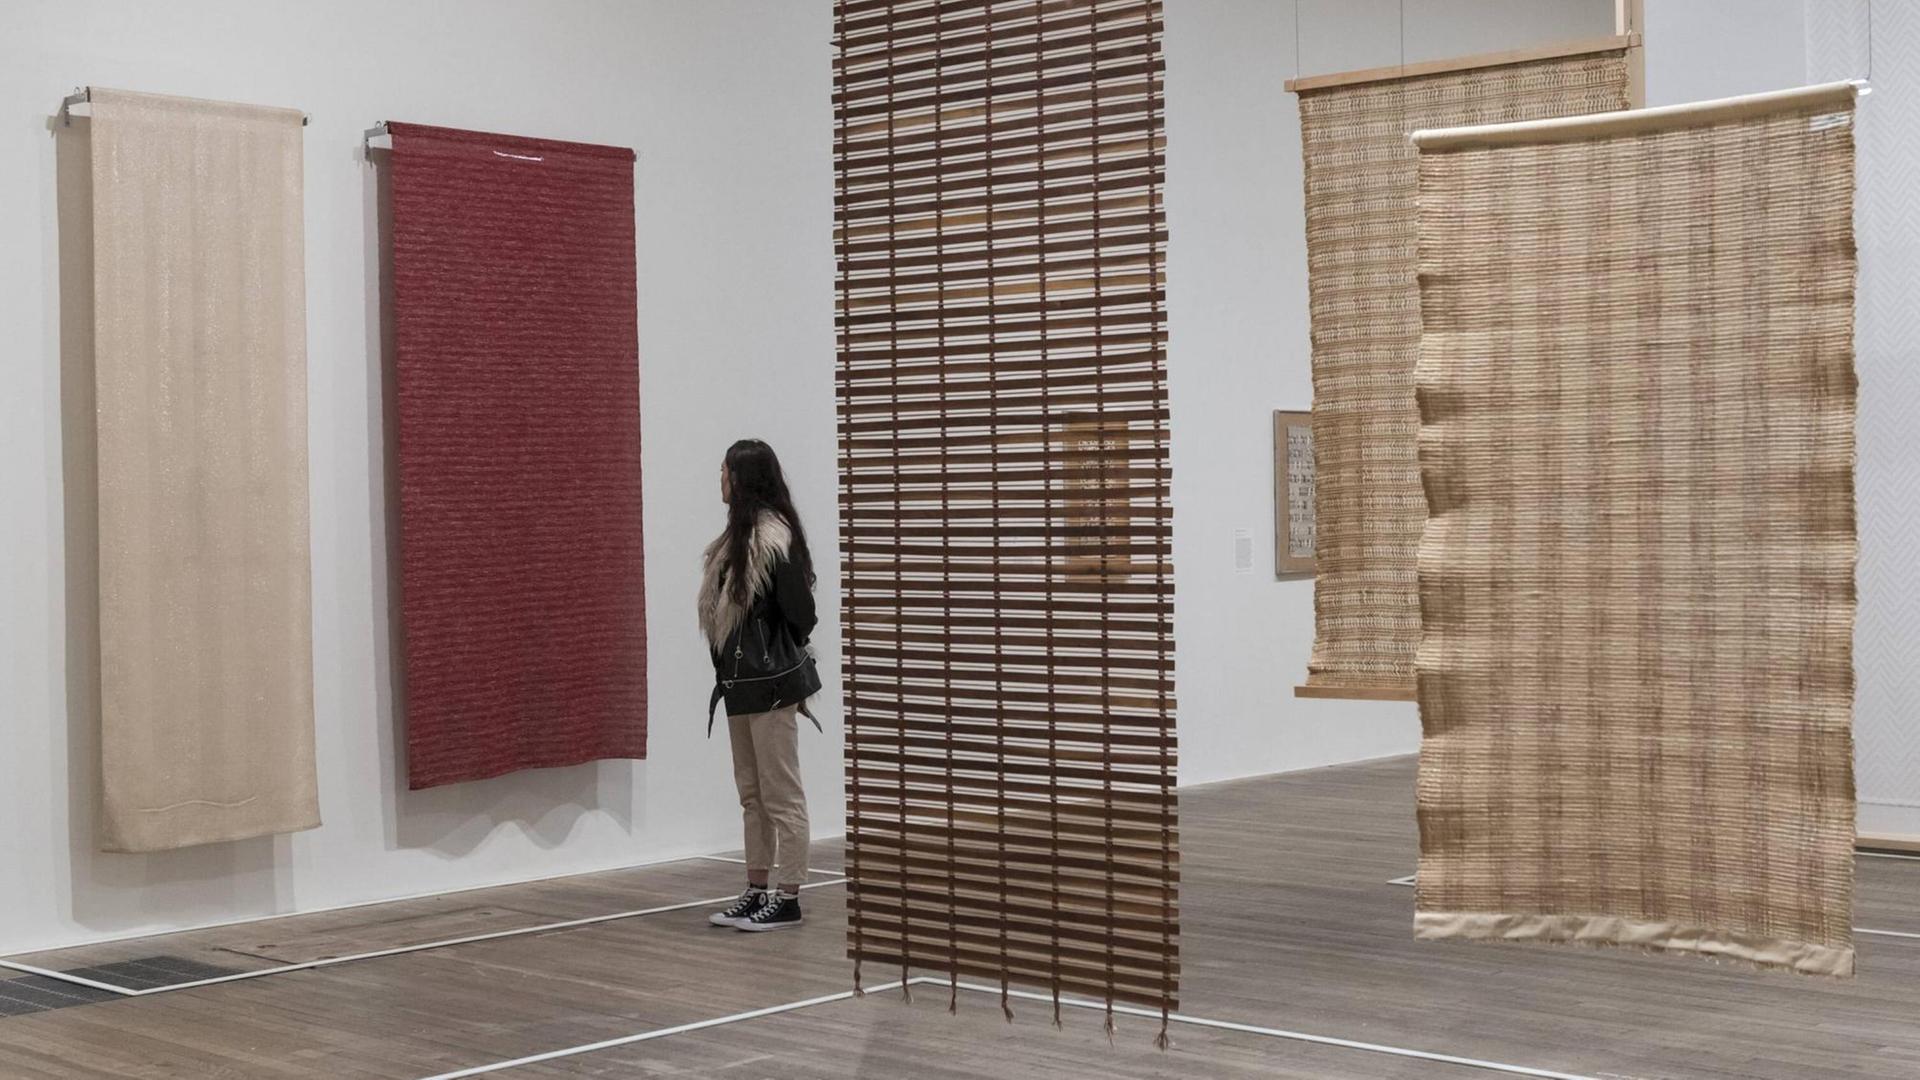 October 9, 2018 - London, UK - Eine Museumsbesucherin schaut Textilarbeiten der deutschen Künstlerin Anni Albers aus den Jahren 1935 und 1949 in einer Ausstellung in der Tate Modern in London an.